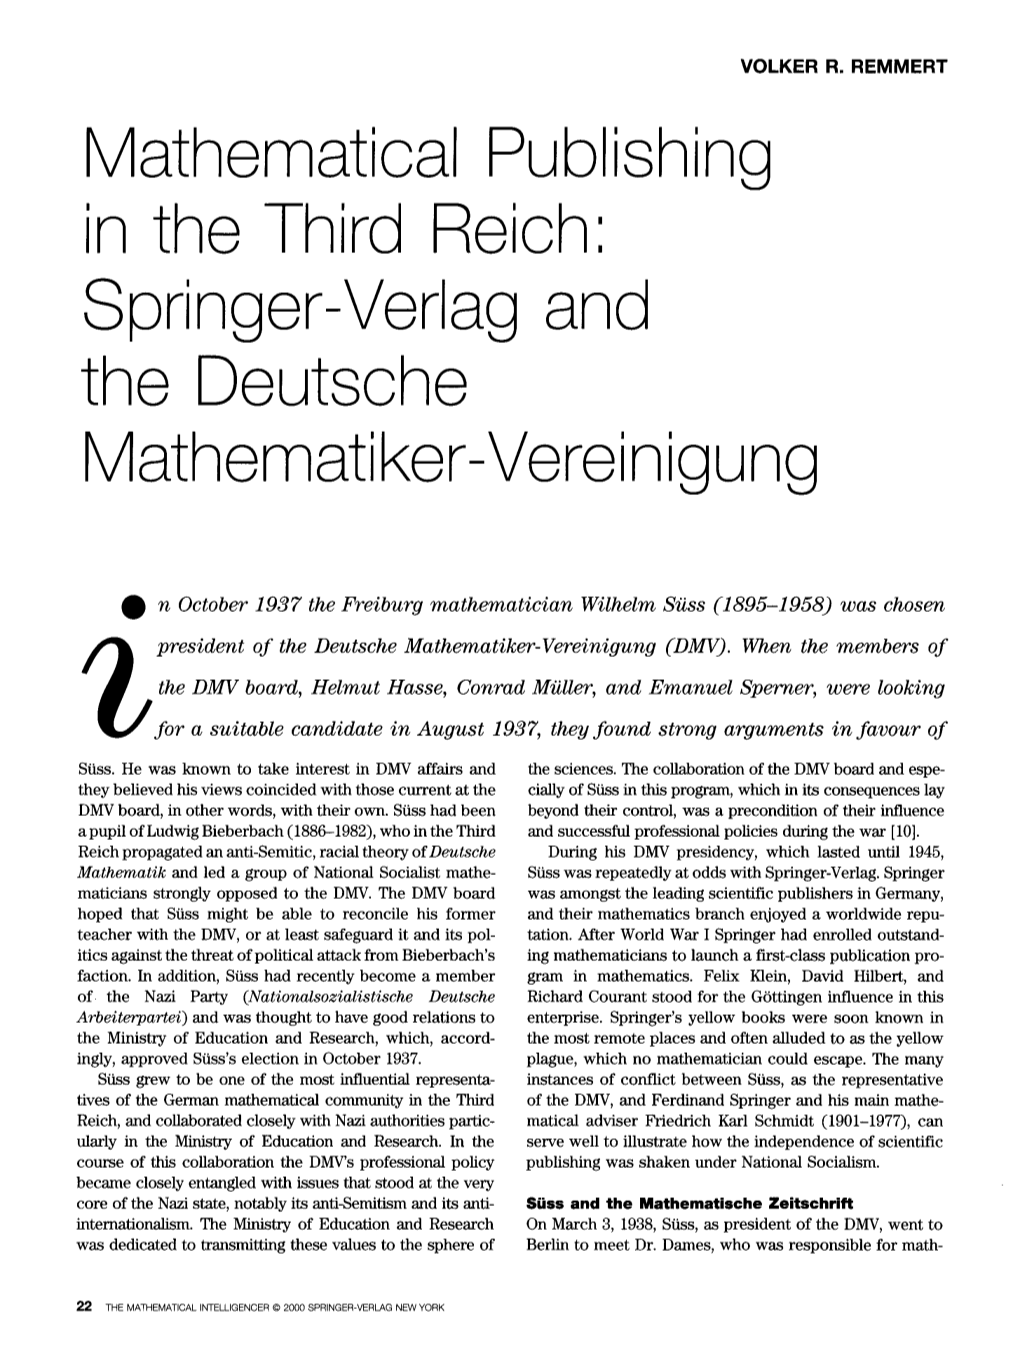 Mathematical Publishing in the Third Reich: Springer-Verlag and the Deutsche M Athemati Ke R-Ve Re in Igun G